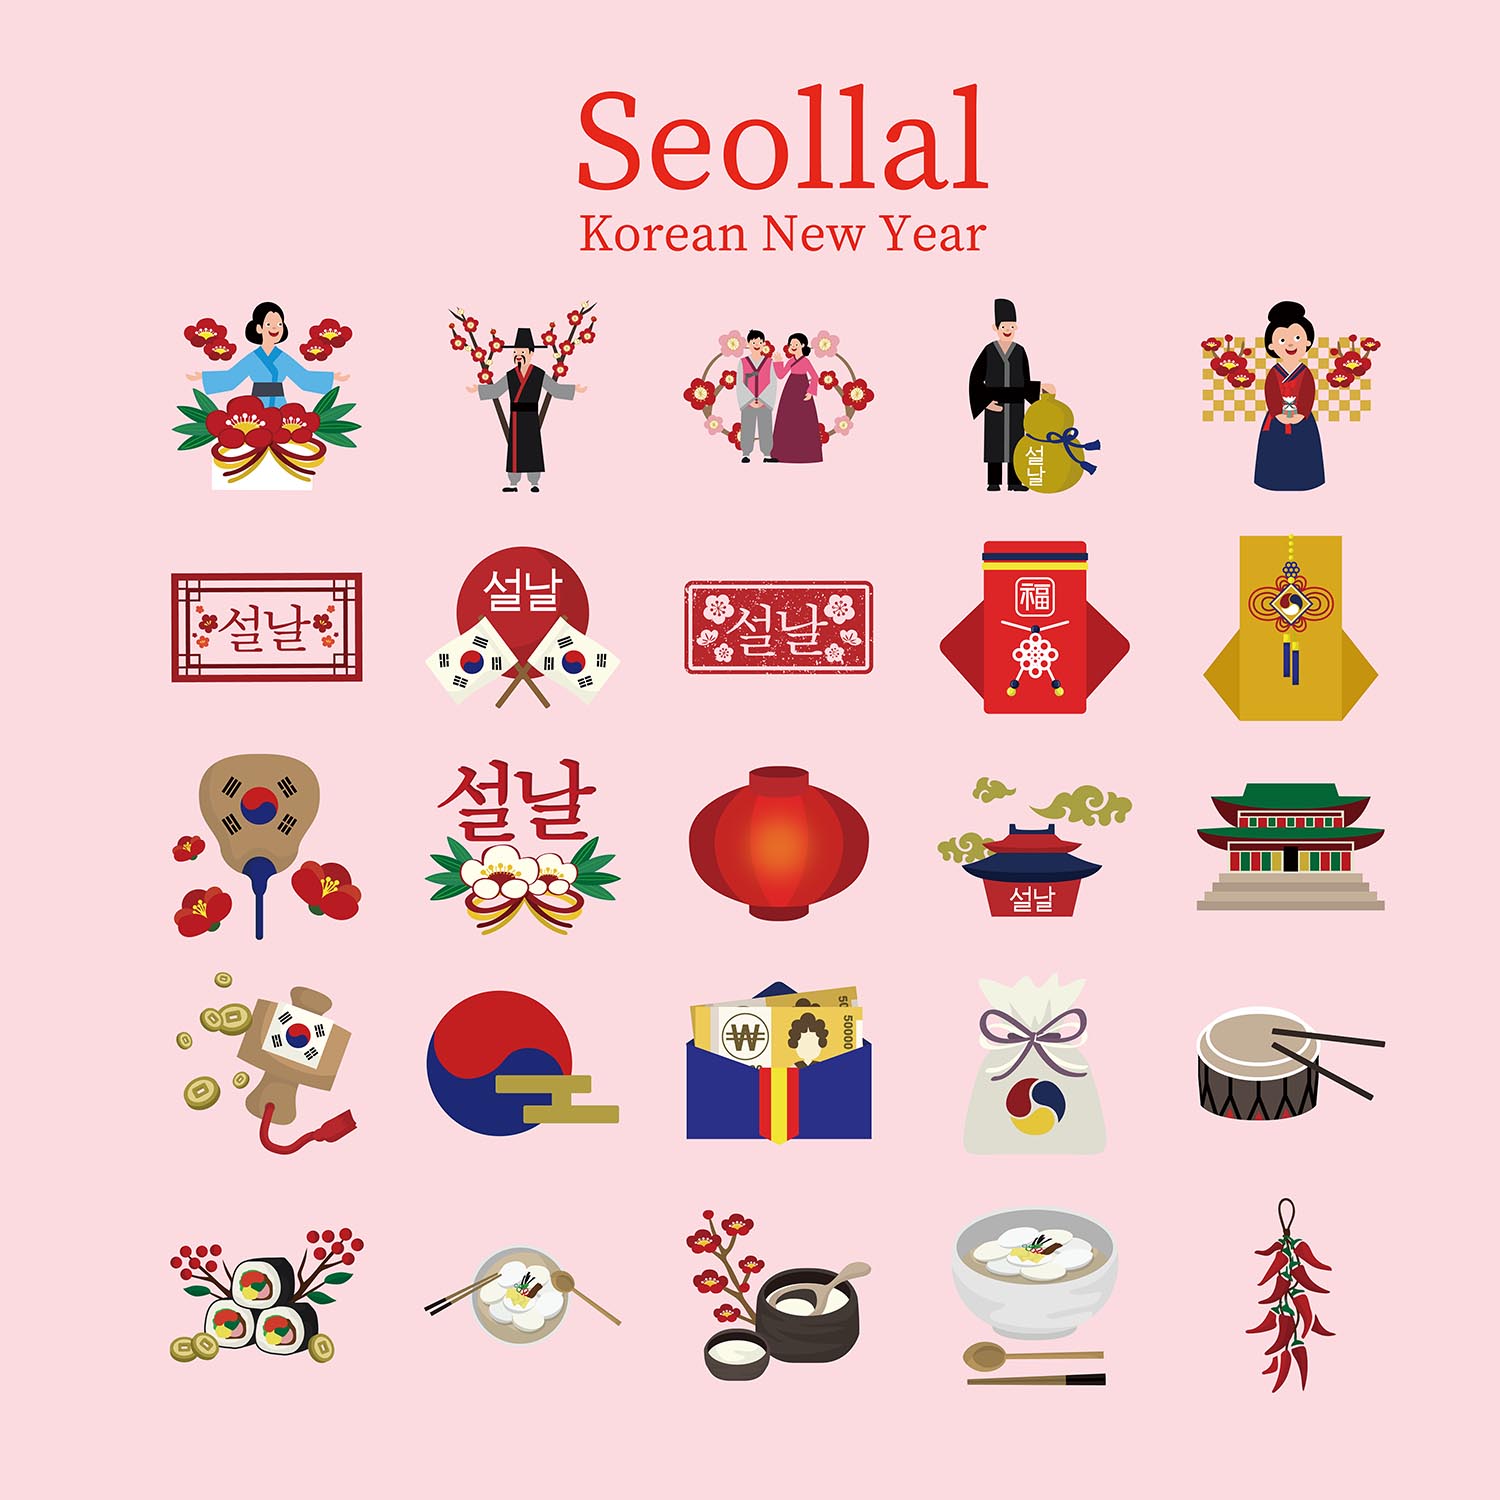 韓国の旧正月 설날 ソルラル について解説 韓国文化コラム ソウルメイト韓国語学校